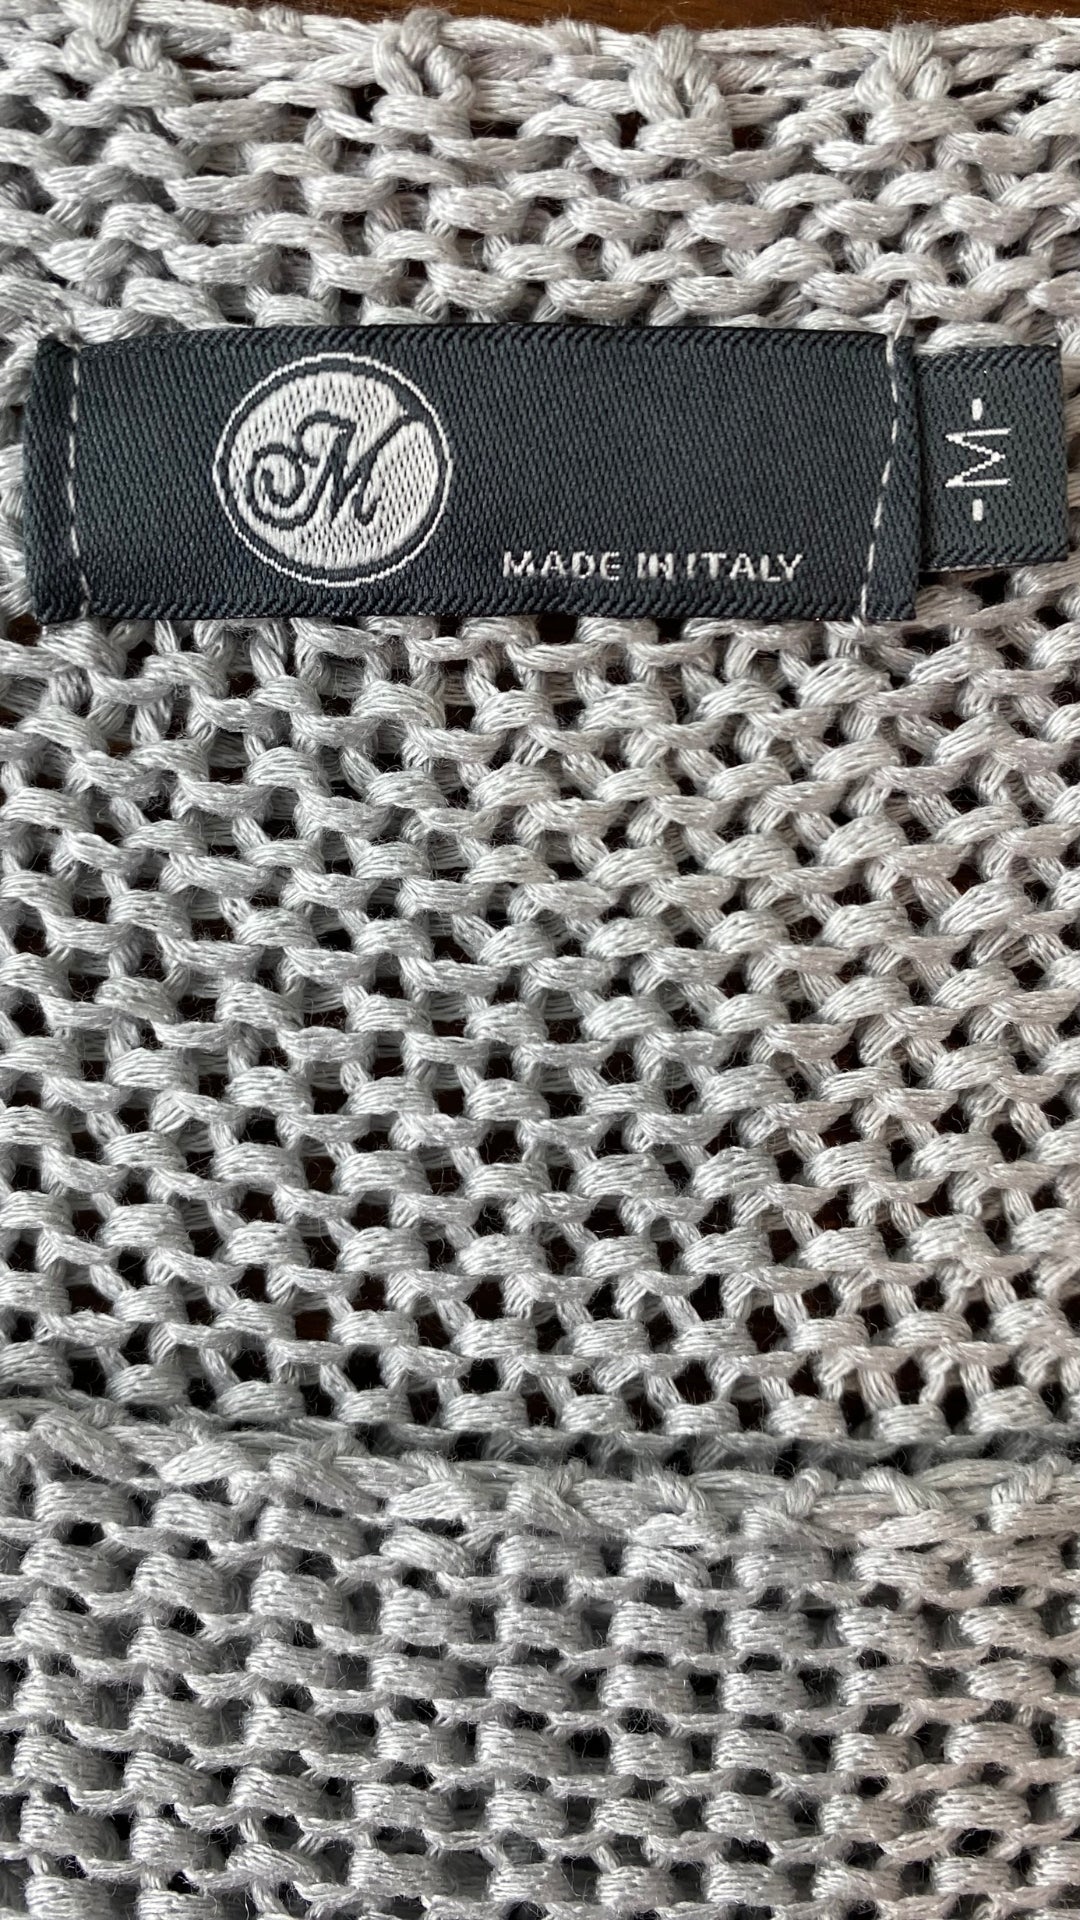 Chandail en tricot ajouré gris M Made in Italy, taille medium. Vue de l'étiquette de marque et taille.